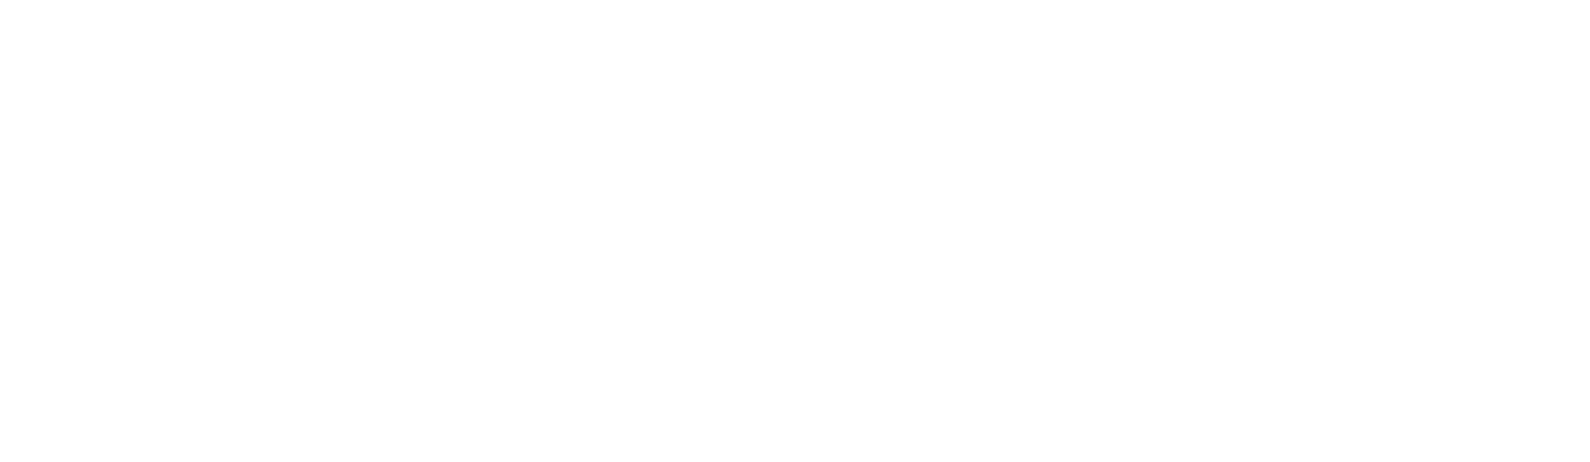 Jushi Holdings logo large for dark backgrounds (transparent PNG)